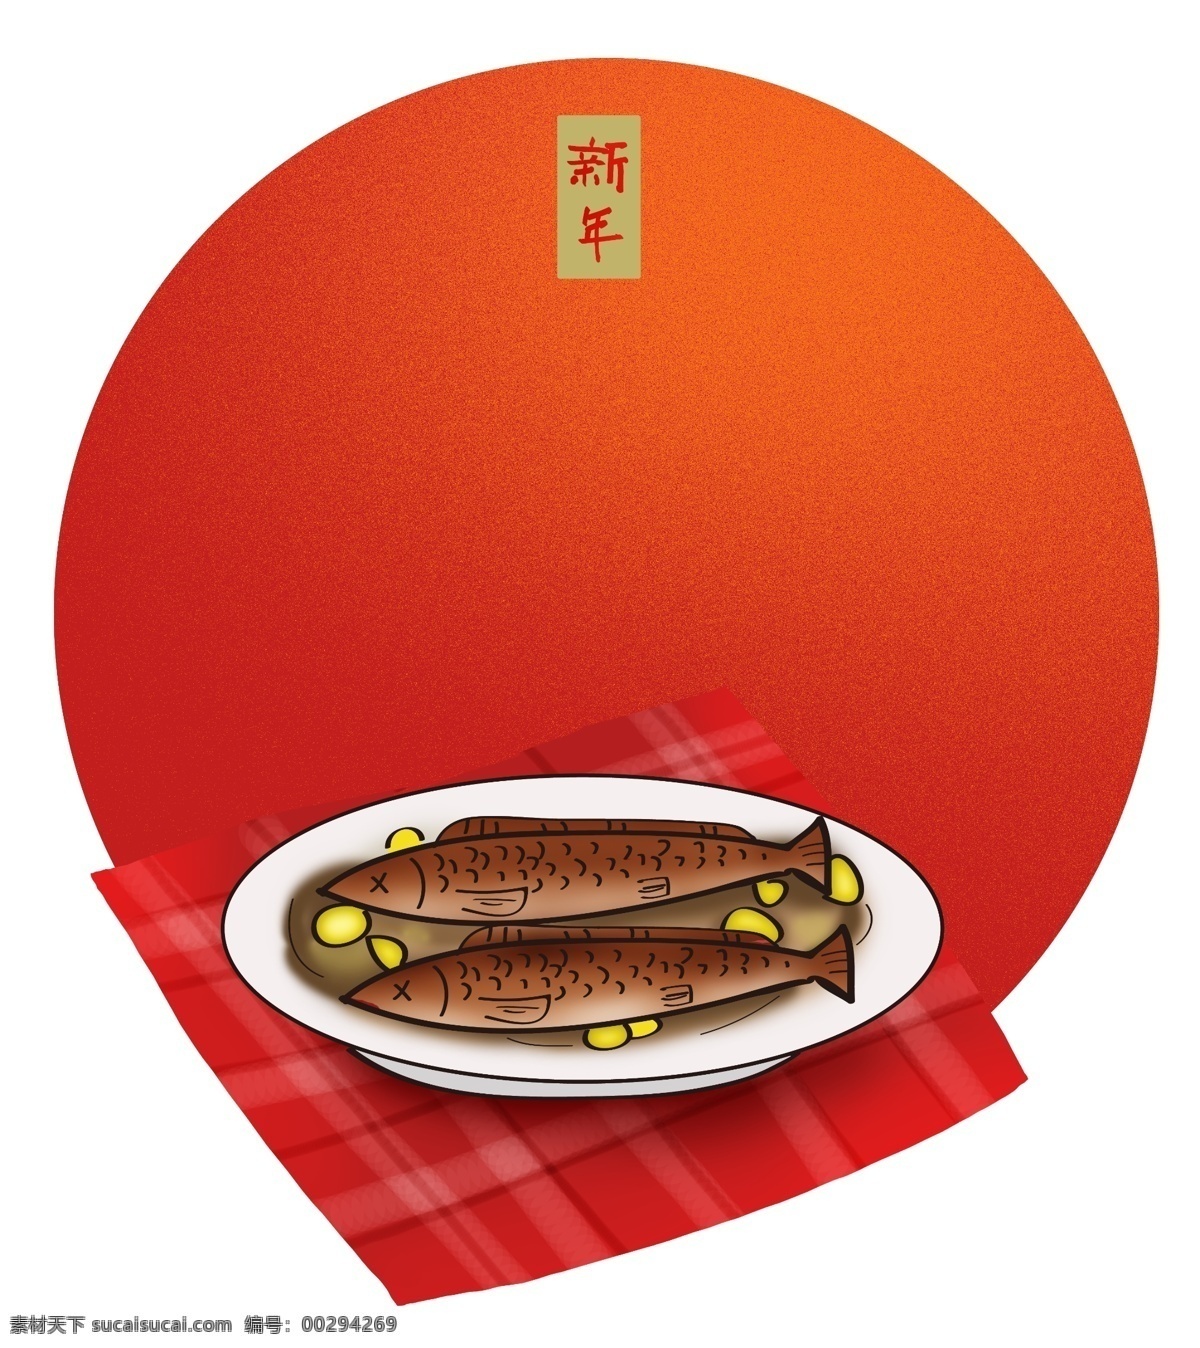 春节 新年 传统 美食 红烧 鱼 元旦 中国风 海鲜 拜年 糕点 农历新年 传统小吃 食物 红烧鱼 中国传统美食